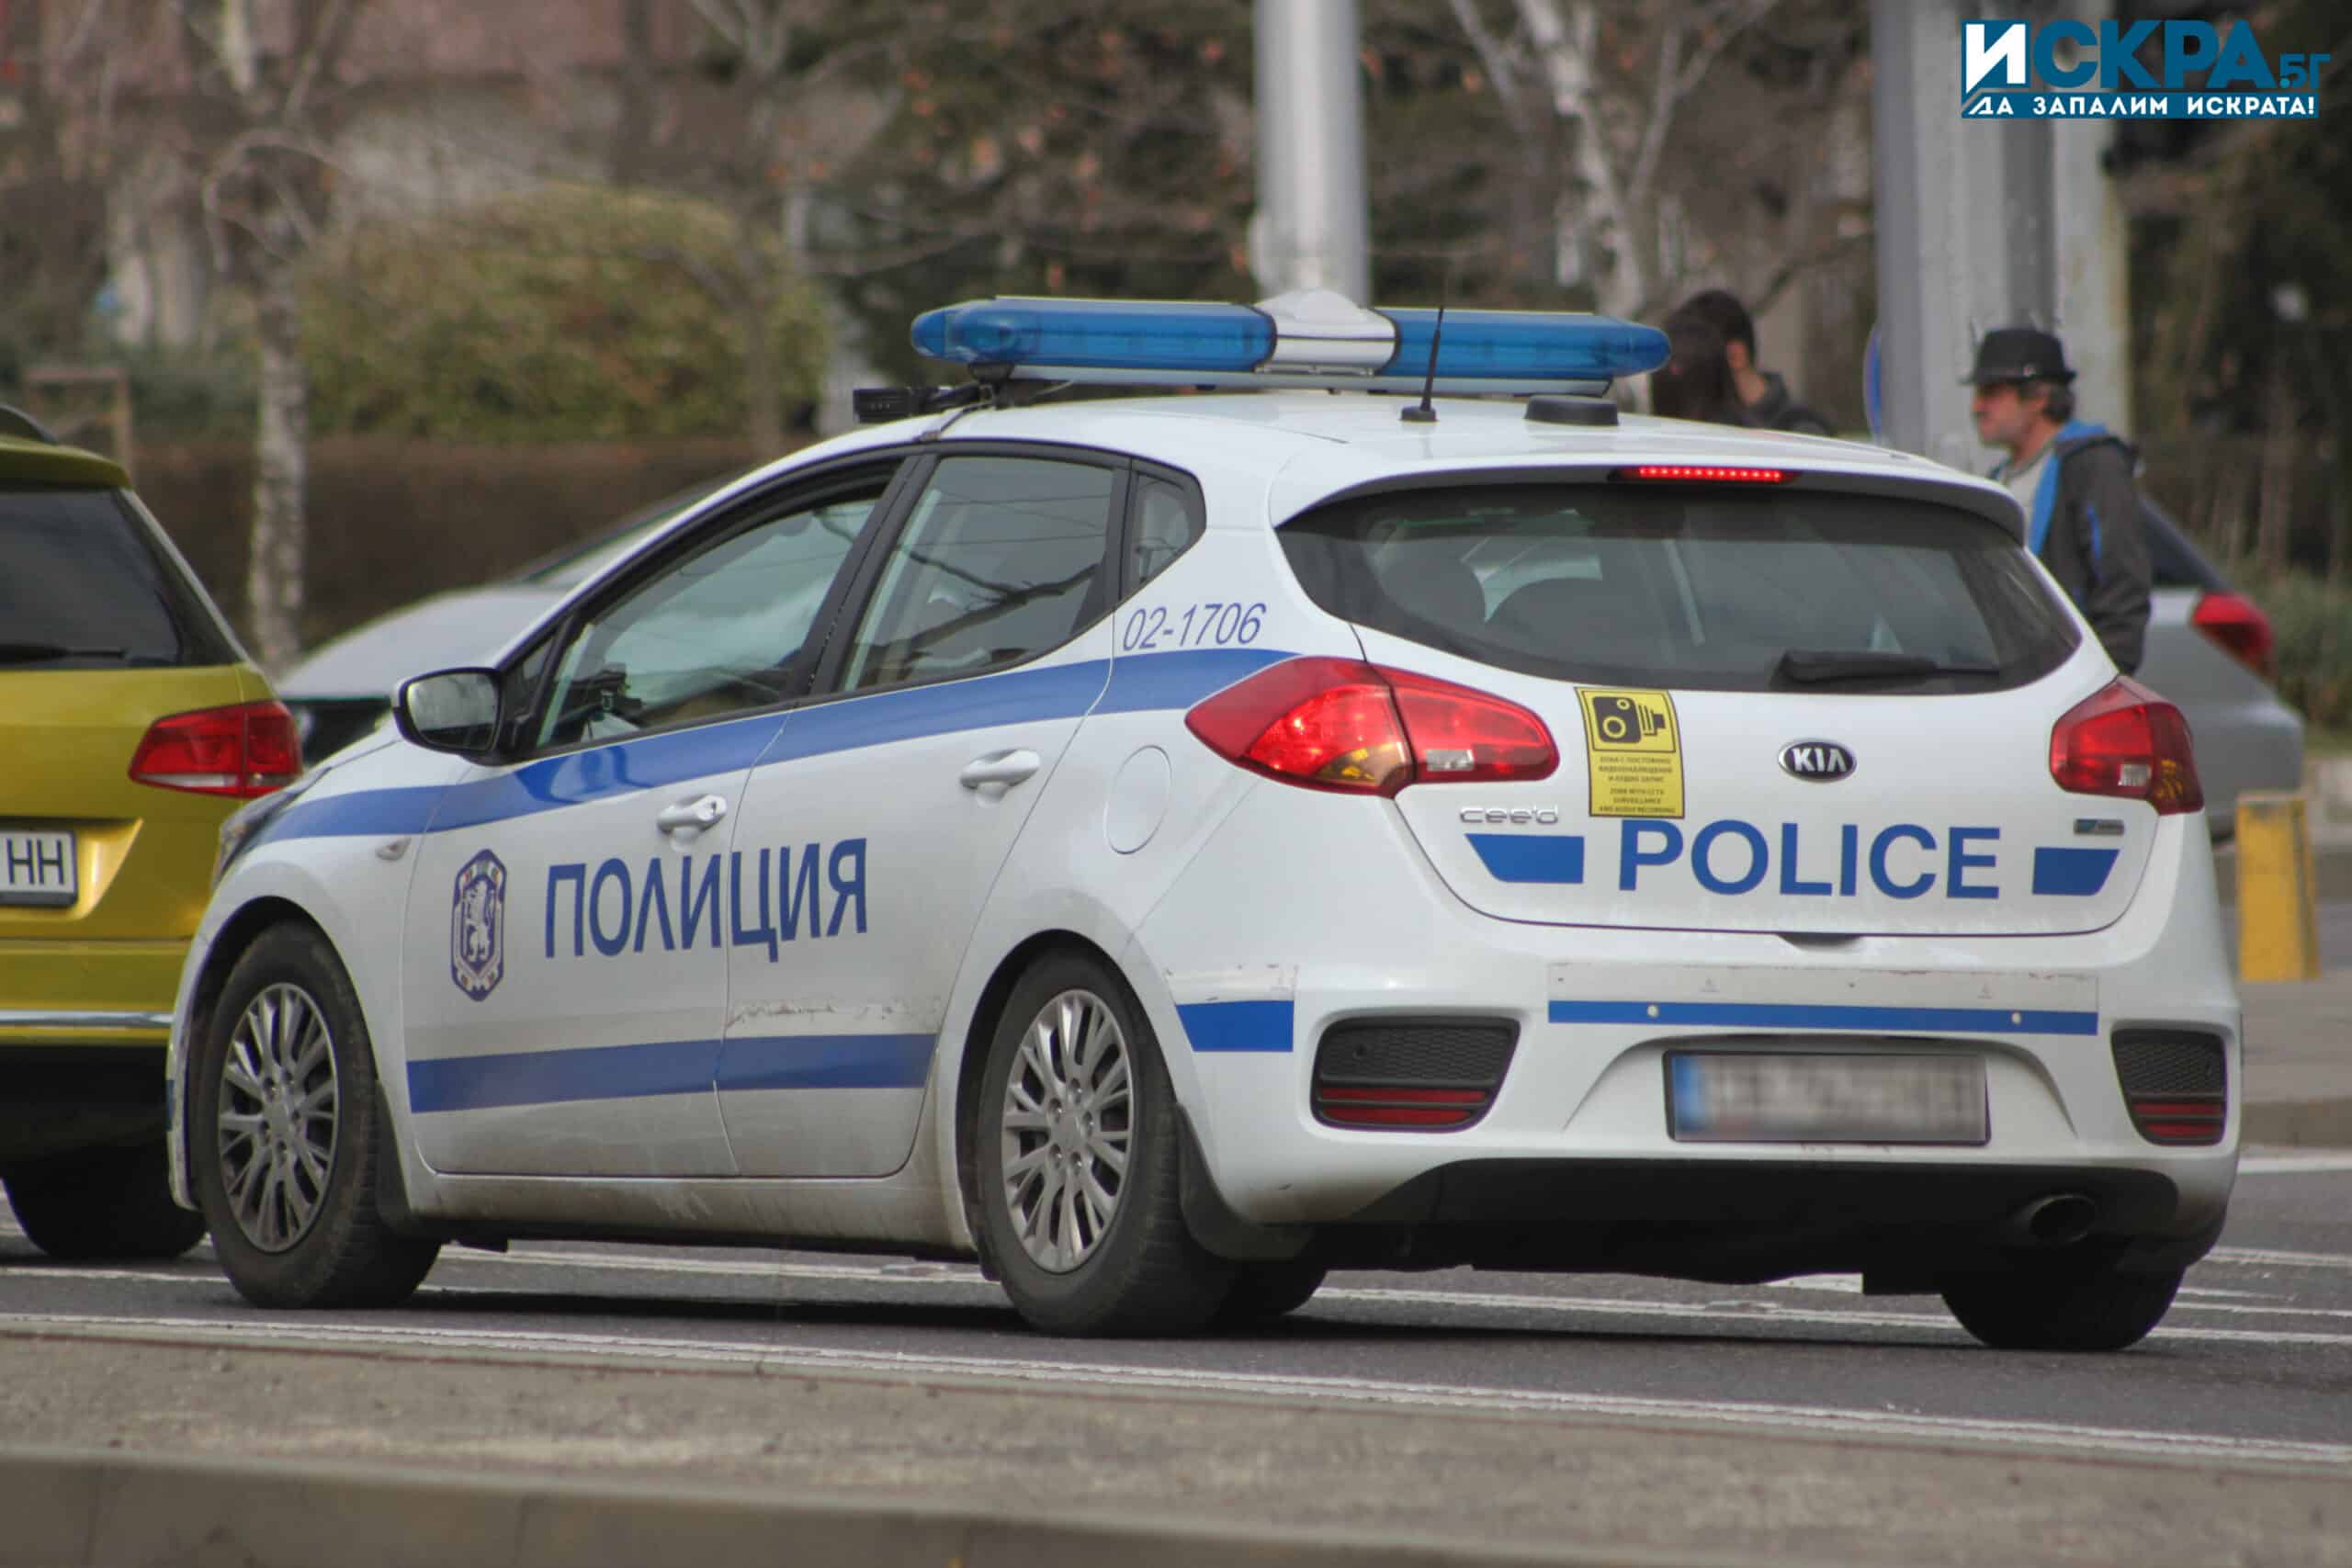 56-годишна жена от Варна е била арестувана за участие в